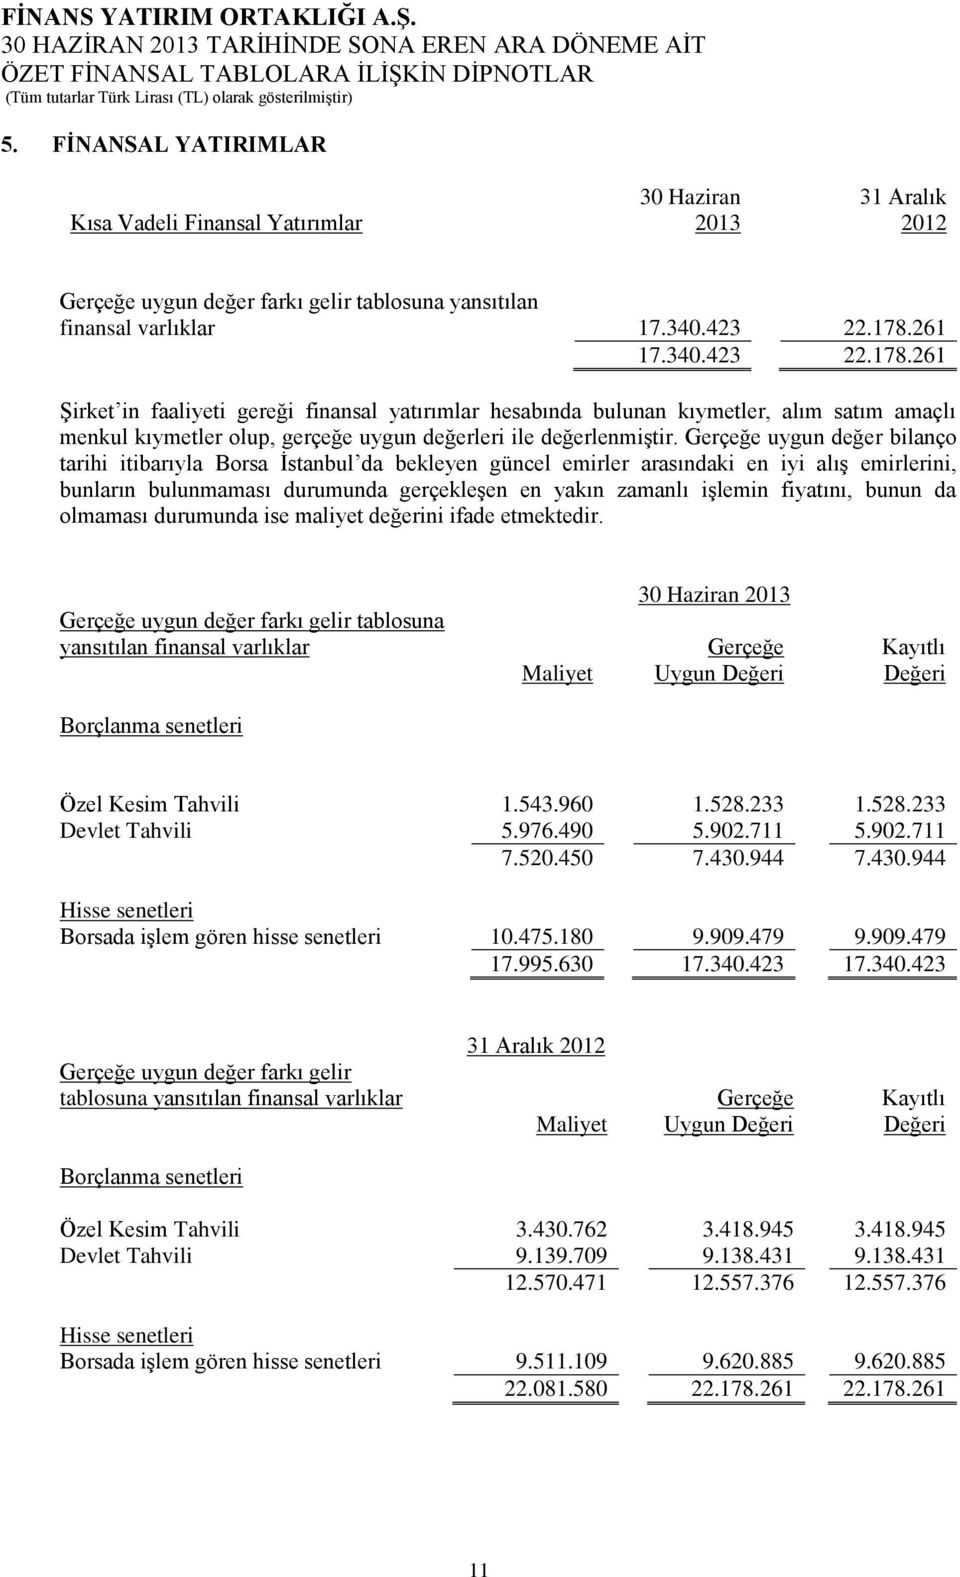 Gerçeğe uygun değer bilanço tarihi itibarıyla Borsa İstanbul da bekleyen güncel emirler arasındaki en iyi alış emirlerini, bunların bulunmaması durumunda gerçekleşen en yakın zamanlı işlemin